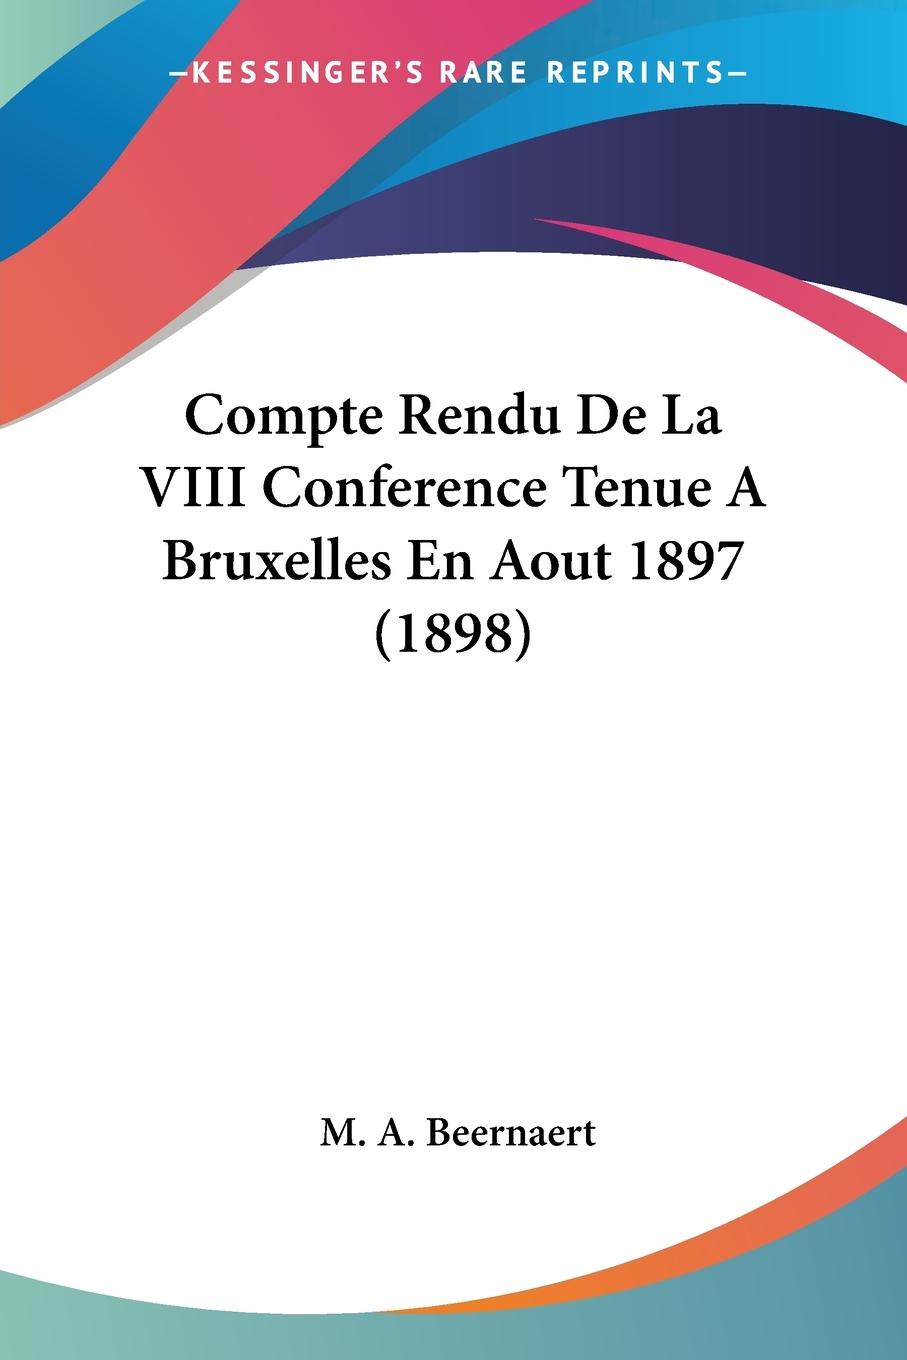 Compte Rendu De La VIII Conference Tenue A Bruxelles En Aout 1897 (1898) - Beernaert, M. A.